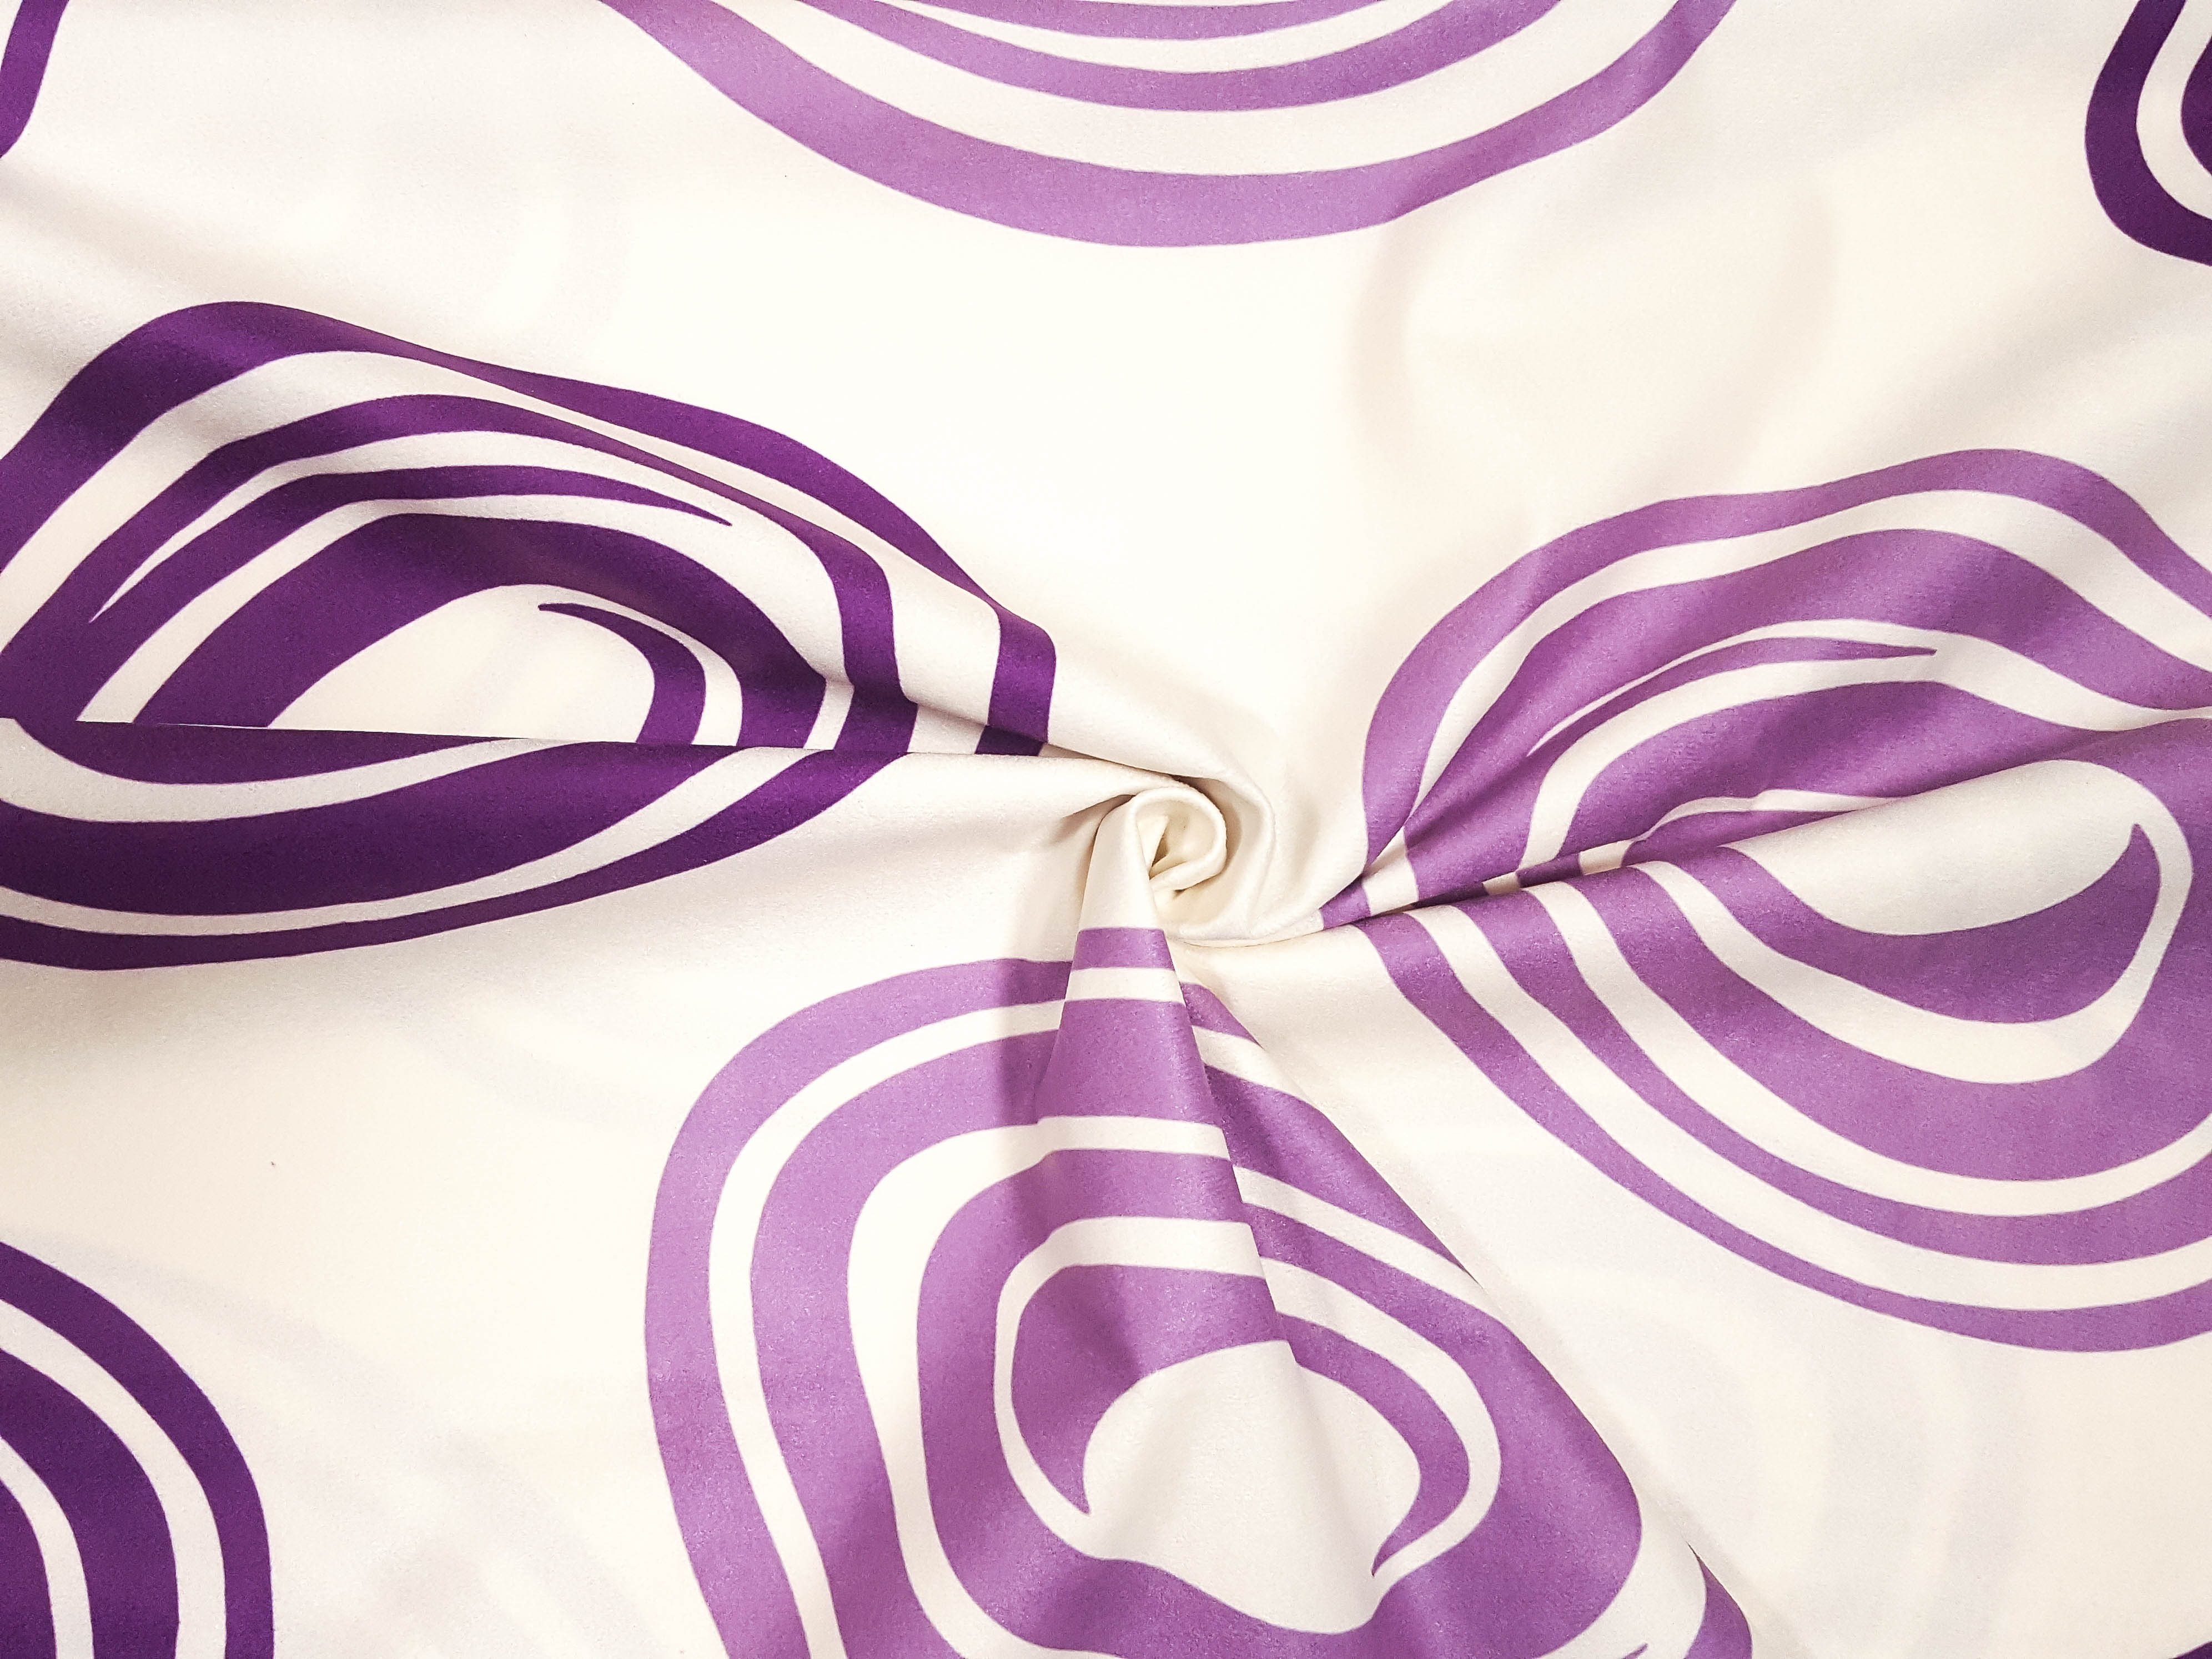 Textillux.sk - produkt Suedine poťahová látka fialové kruhy 150 cm